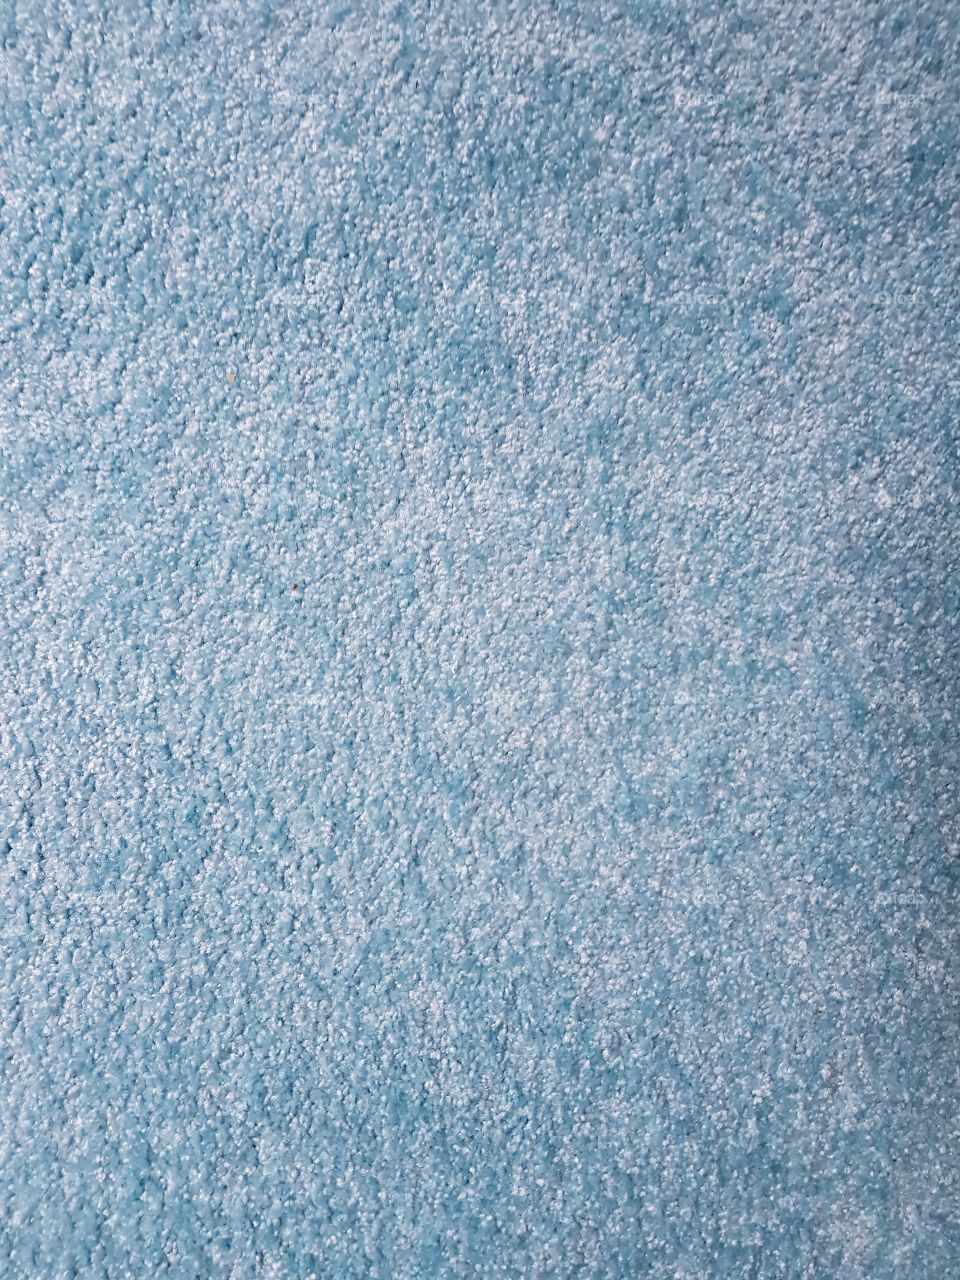 hellblauer Teppich, langflor, flauschig, unterschiedliche Blautöne, Struktur, nicht bearbeitet